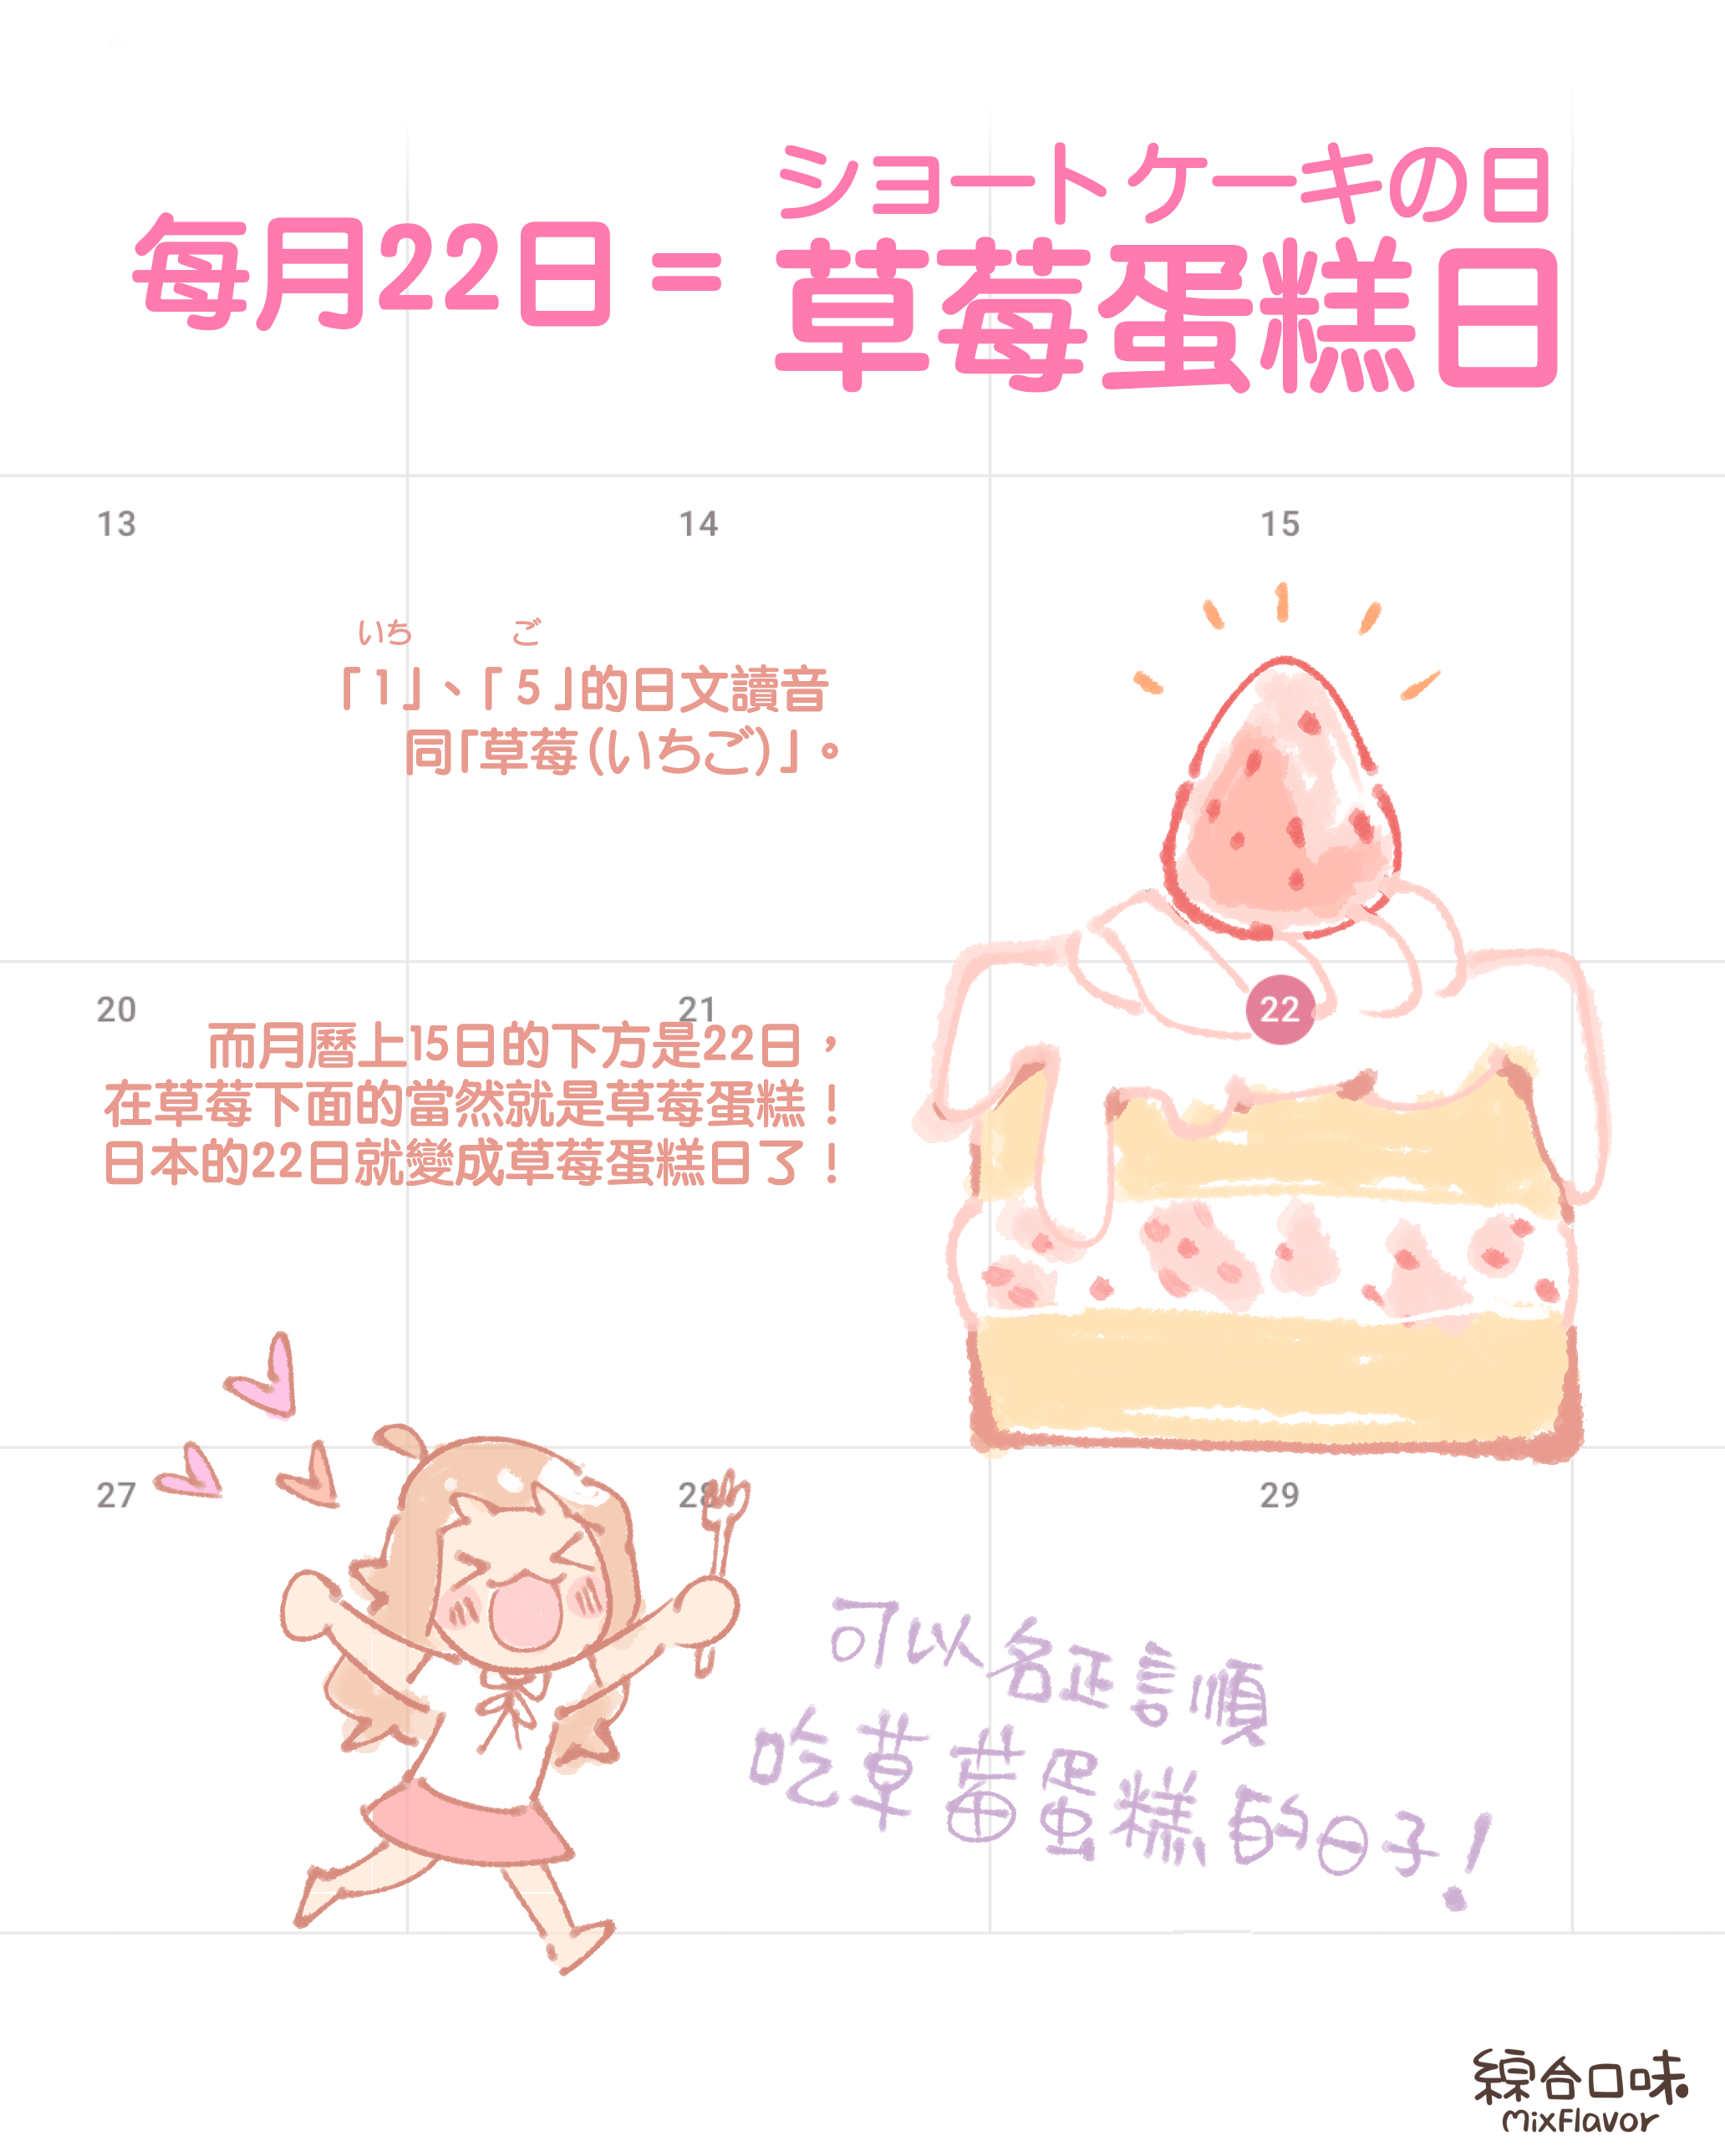 每月22日＝草莓蛋糕日（ショートケーキの日）  「 1 」、 「 5 」的日文讀音 同「草莓（いちご）」。  而月曆上15日的下方是22日，在草莓下面的當然就是草莓蛋糕！  日本的22日就變成草莓蛋糕日了！  這種好日子不能只有日本人享有啊！！  #草莓蛋糕吃起來 🍰 #ショートケーキの日 #草莓蛋糕日 #今天早上看電視才知道有這節日XD